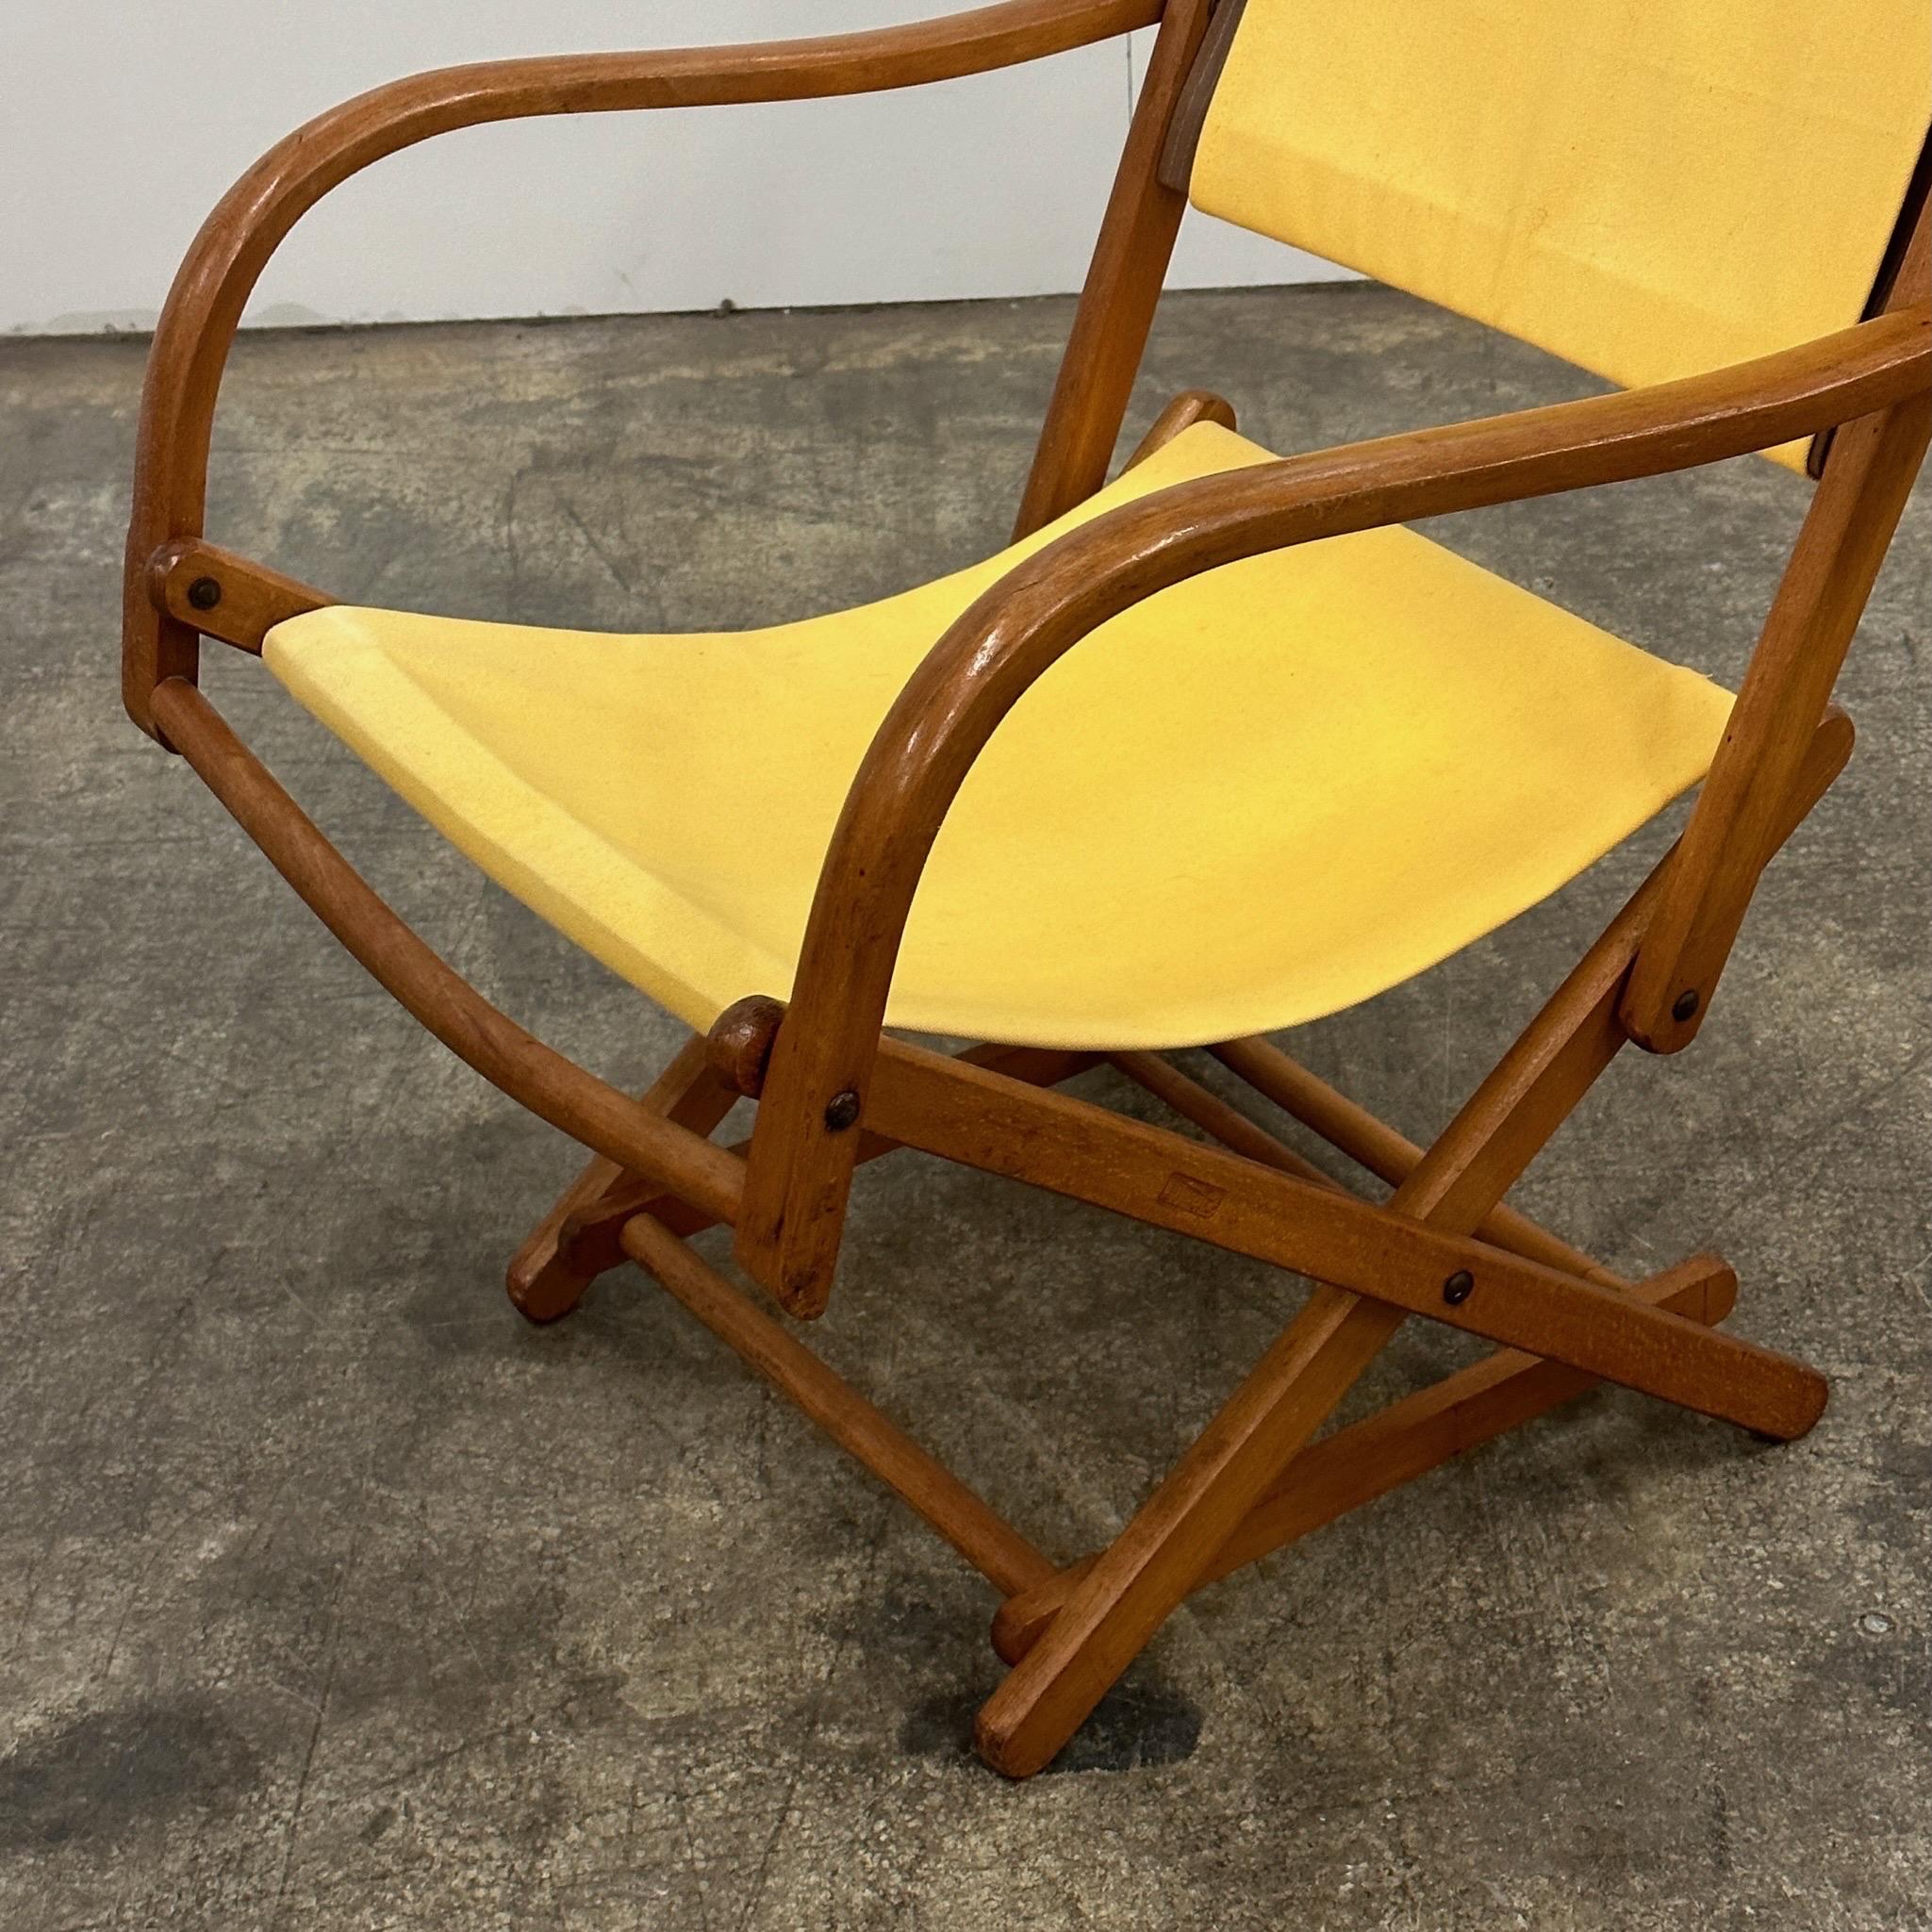 c. 1950s. Faltbarer Stuhl, hergestellt in Dänemark. Gelbe Polsterung aus Segeltuch. 